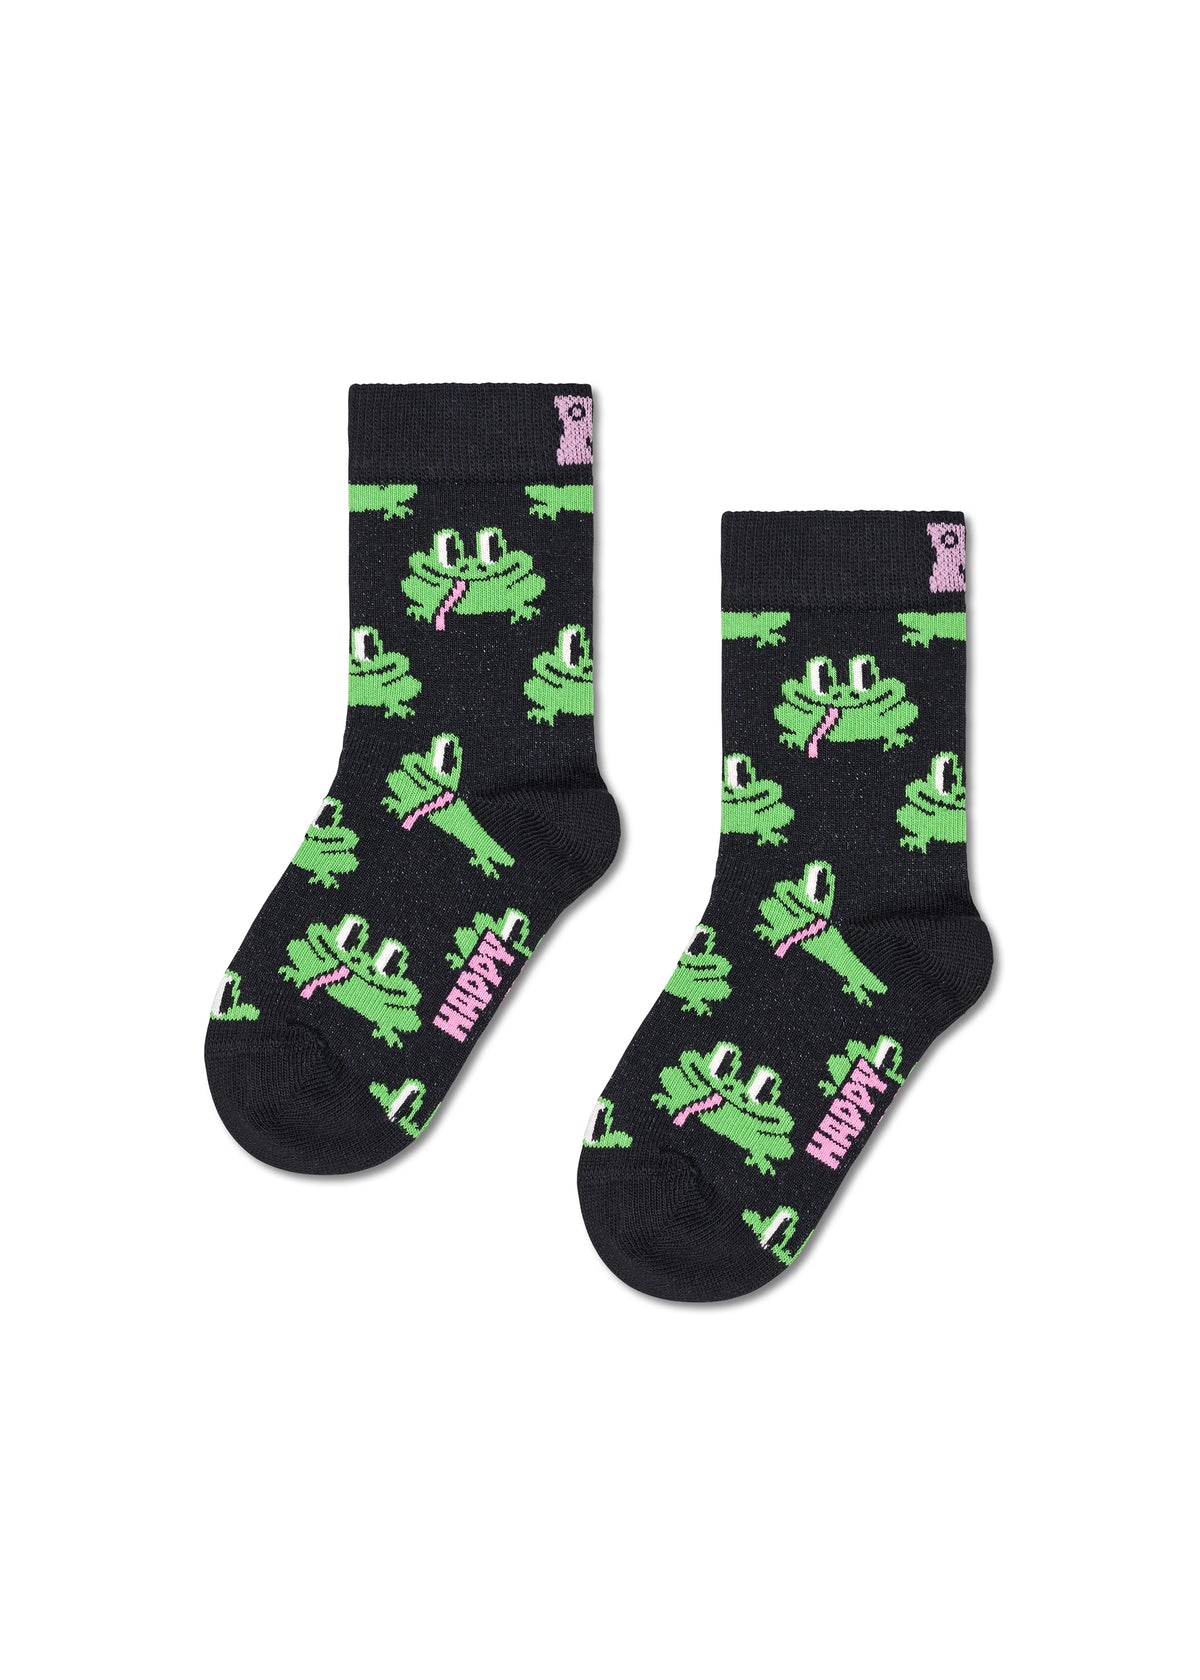 Children's socks - Frog